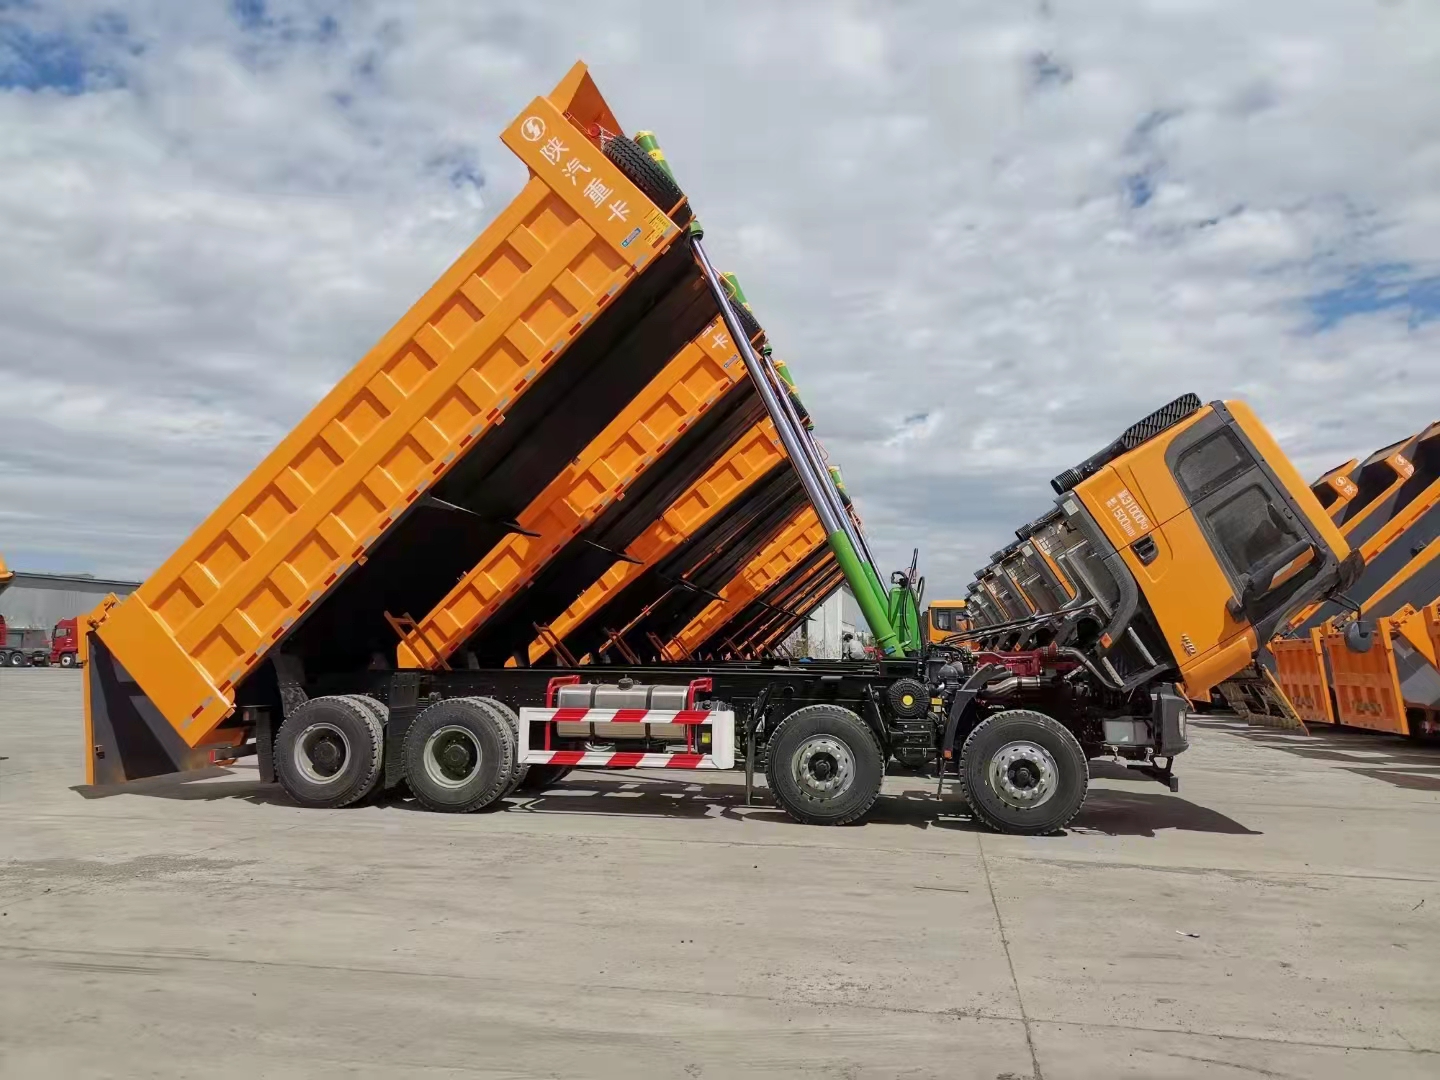 Hot Sale 25-30 tonnes Shacman F3000 6*4 8x4 camion à benne basculante